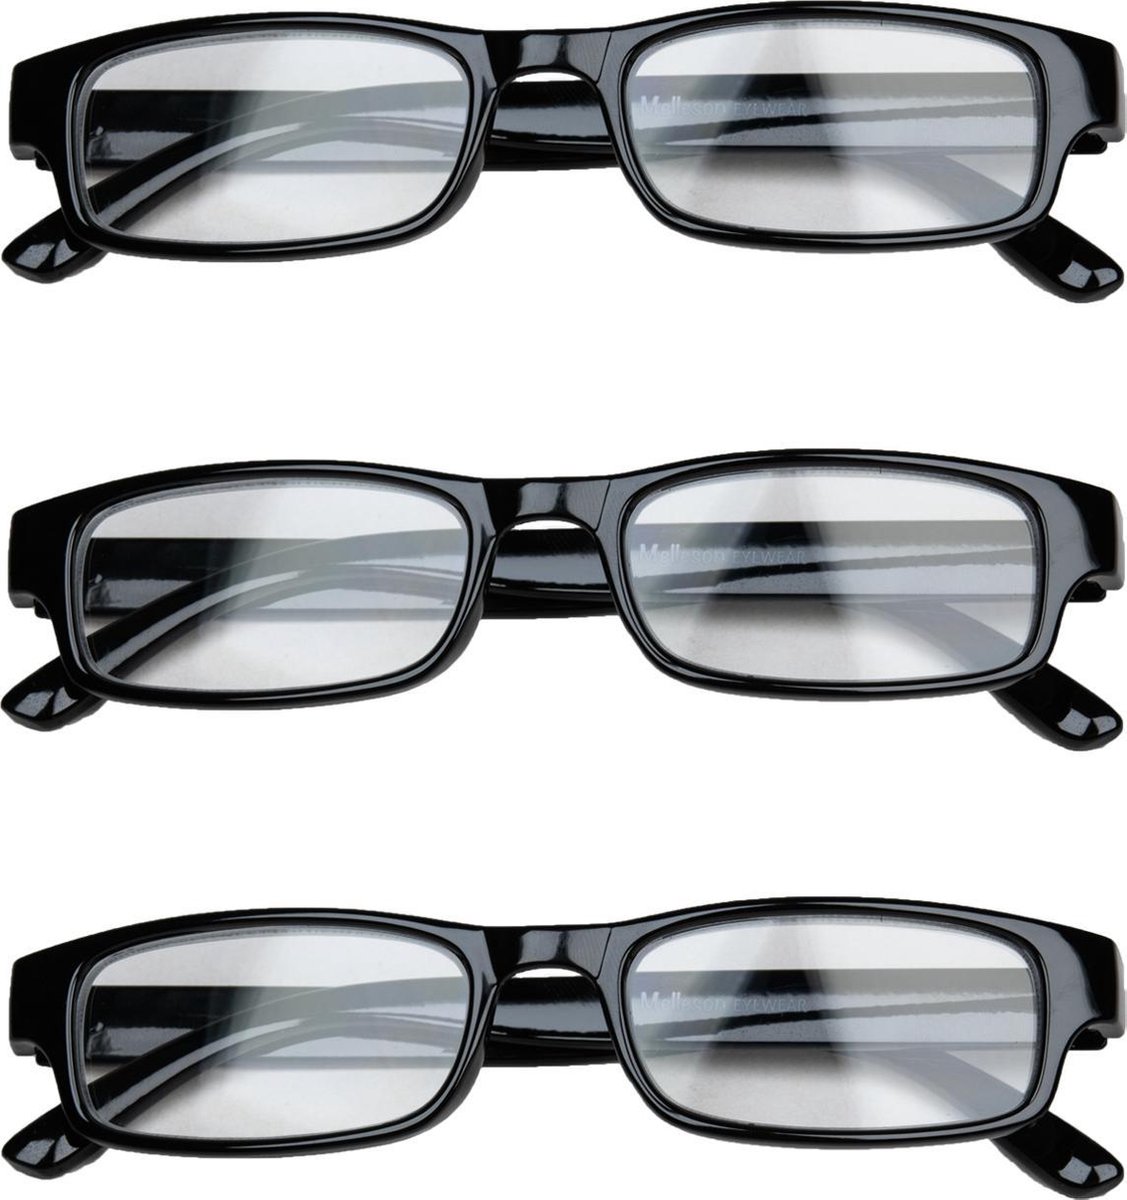 Melleson Eyewear overkijk leesbril zwart +1.00 - 3 stuks en 3 pouches - leesbrillen